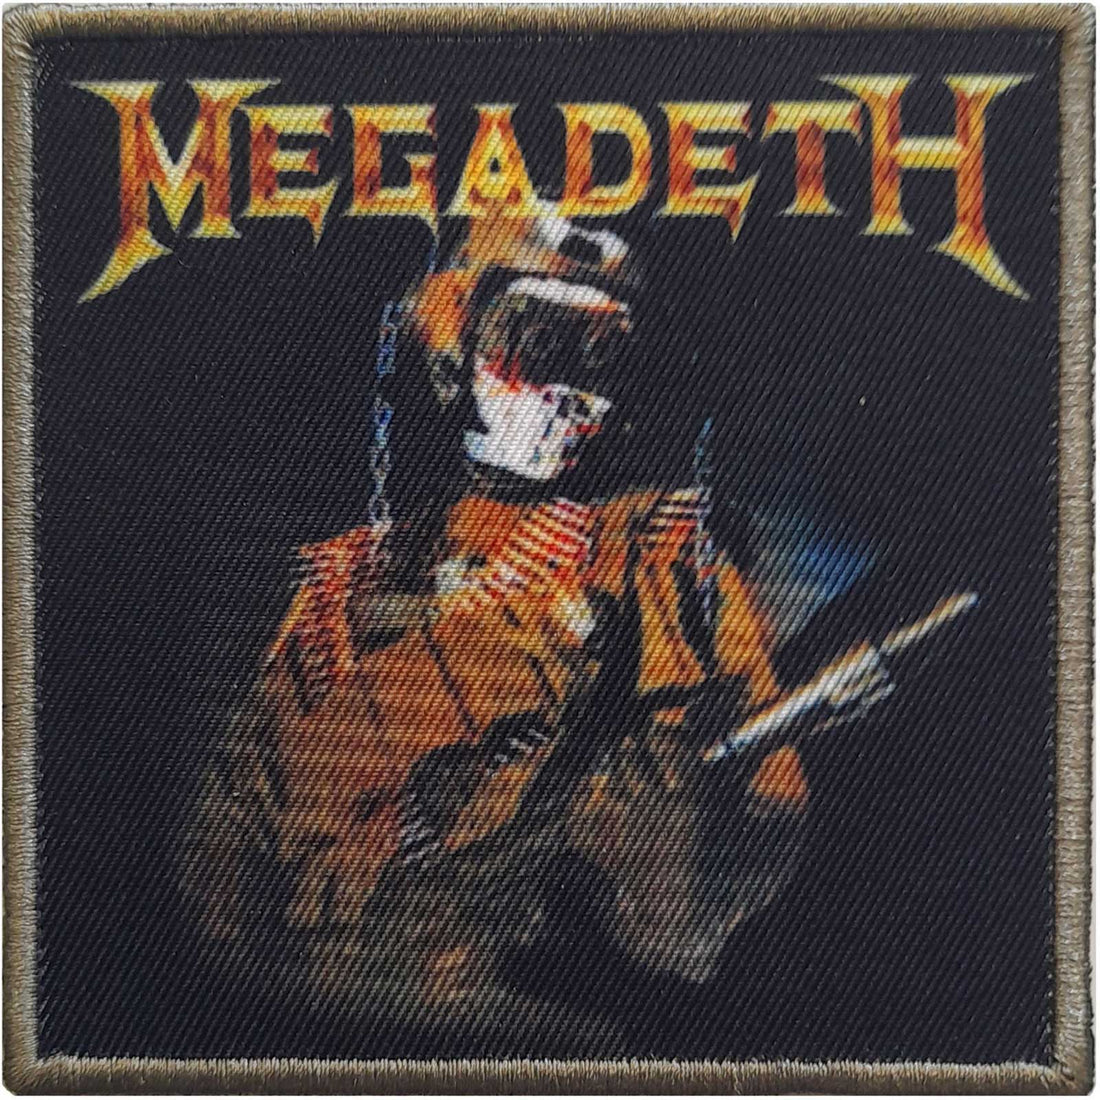 Megadeth Standard Patch: Trooper